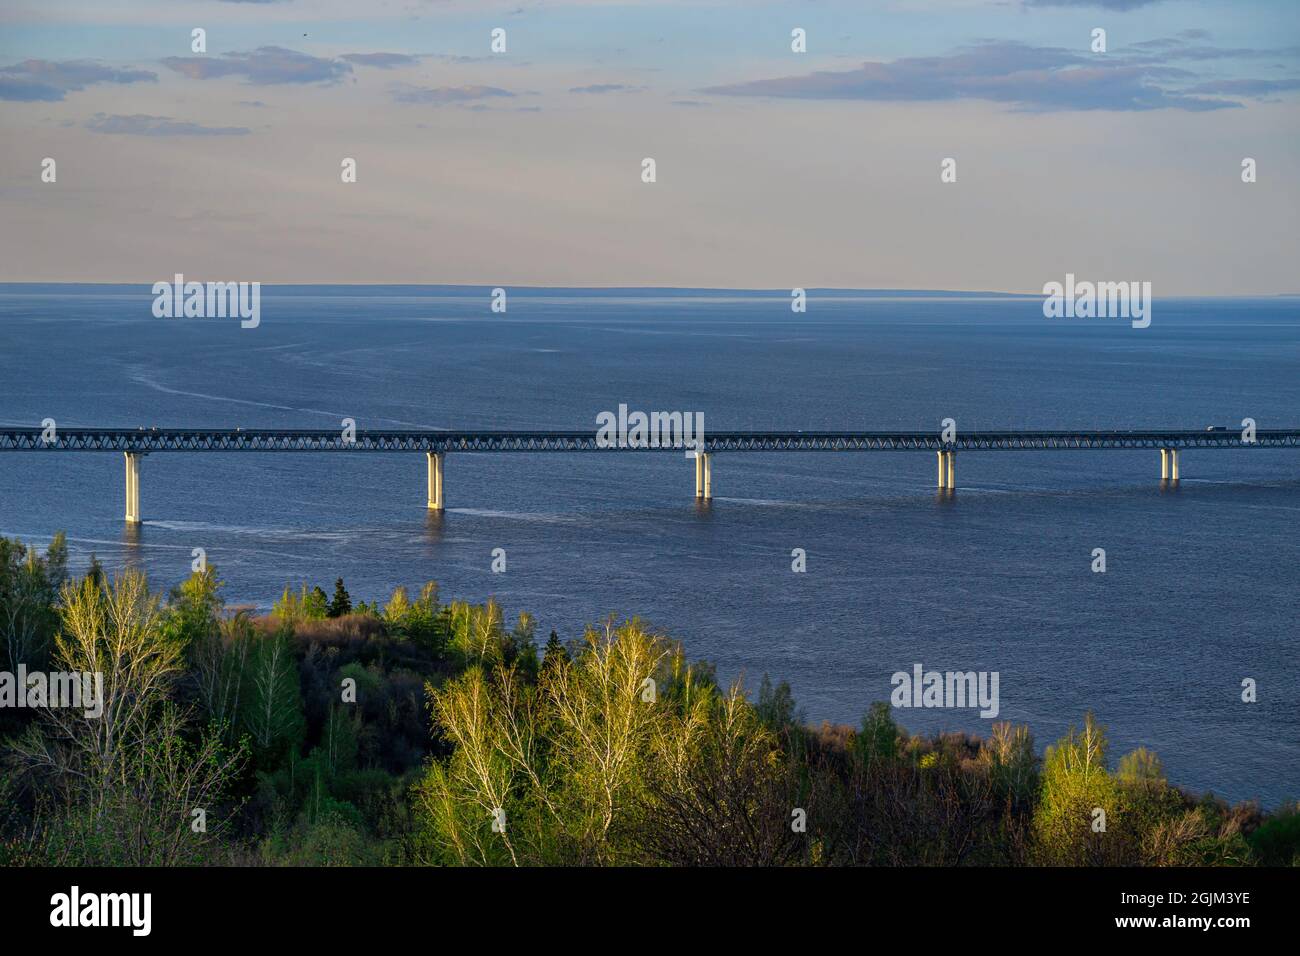 Die Präsidentenbrücke in Uljanowsk. Brücke über die Wolga. Sonnenuntergang am Abend. Stockfoto